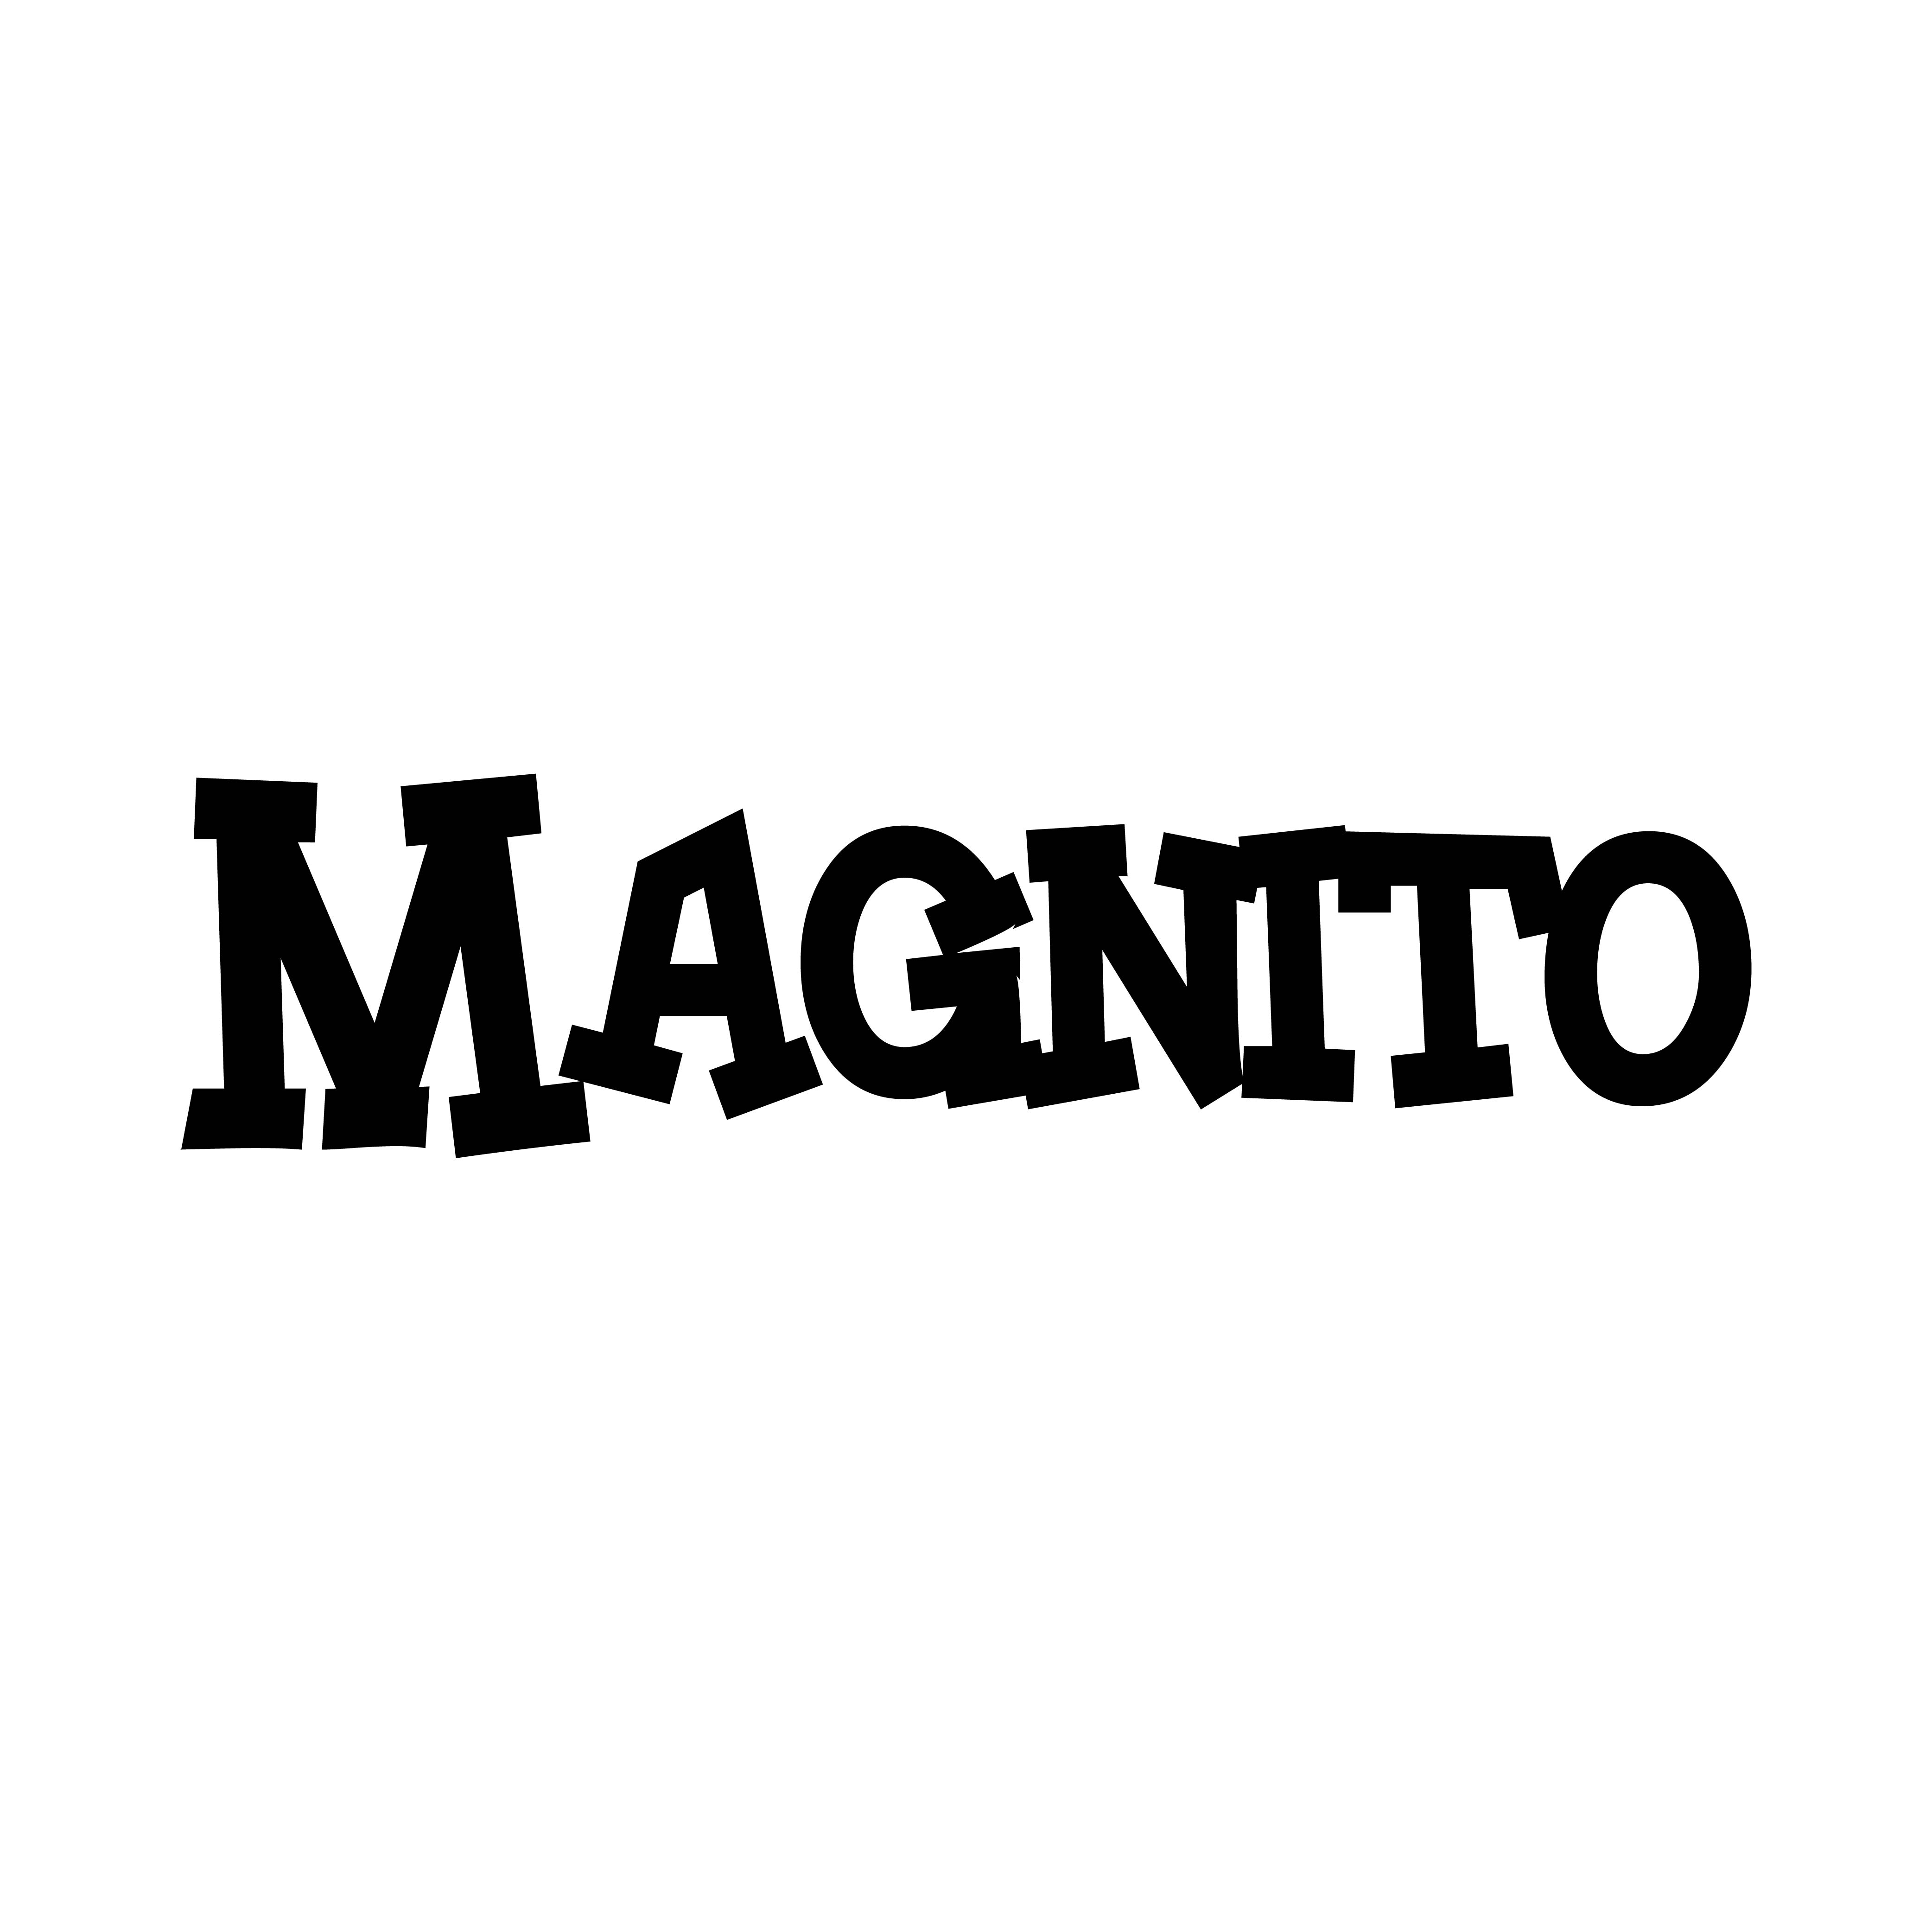 Magnito